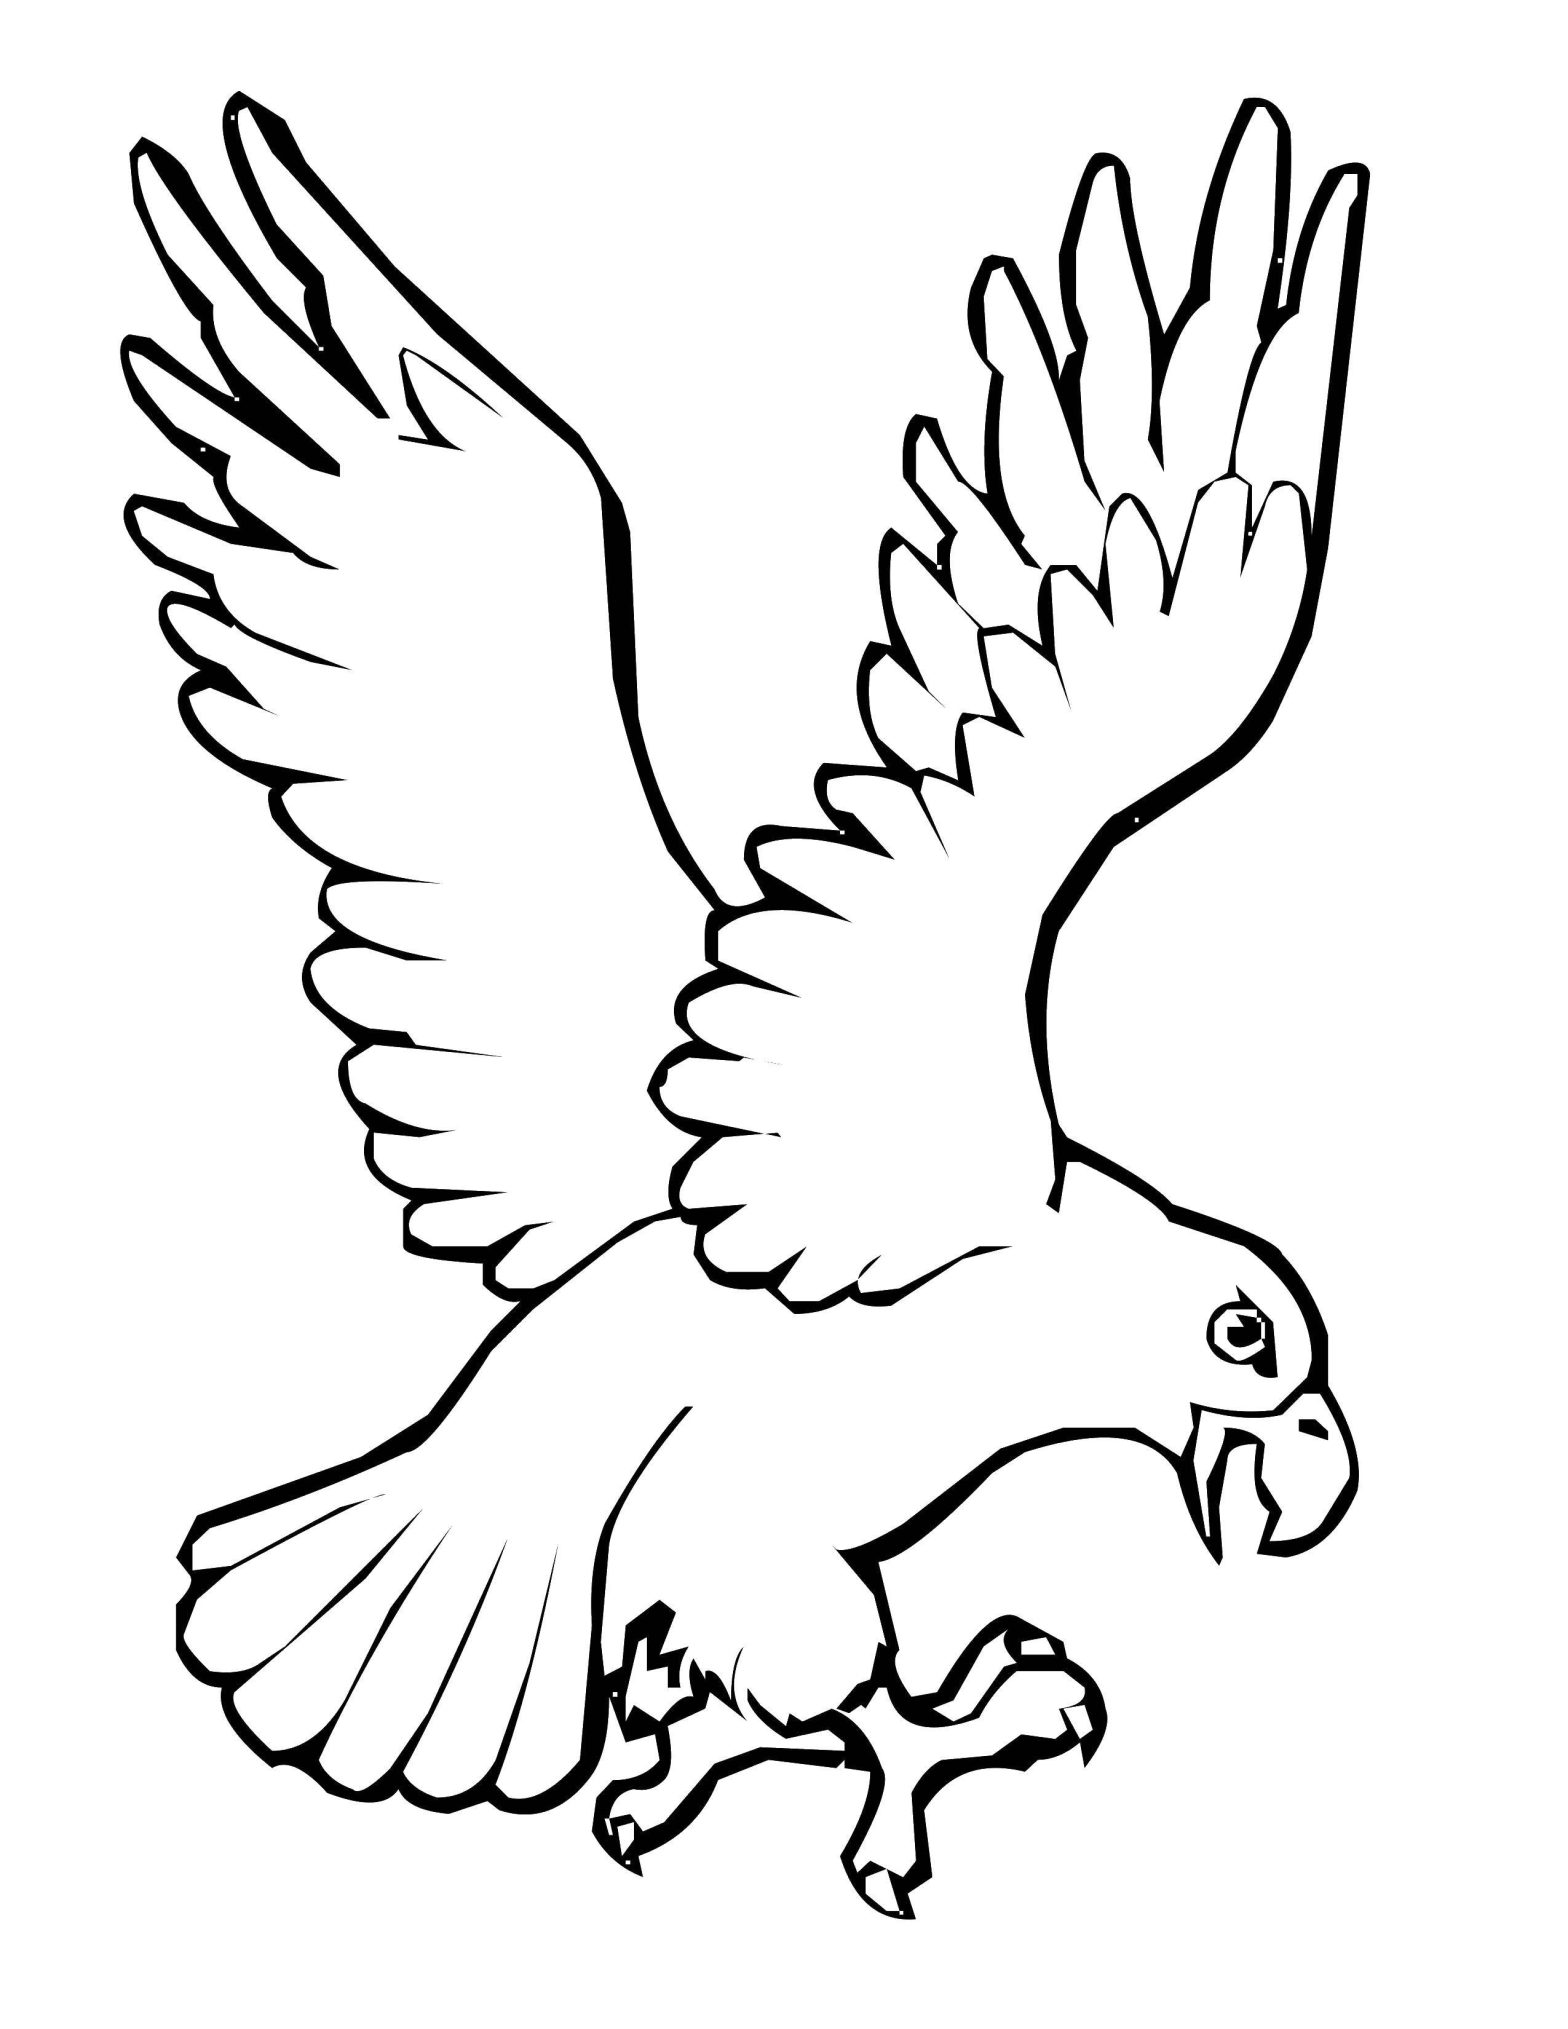 Раскраски птиц для детей - бесплатные картинки для раскрашивания (птица, орел)